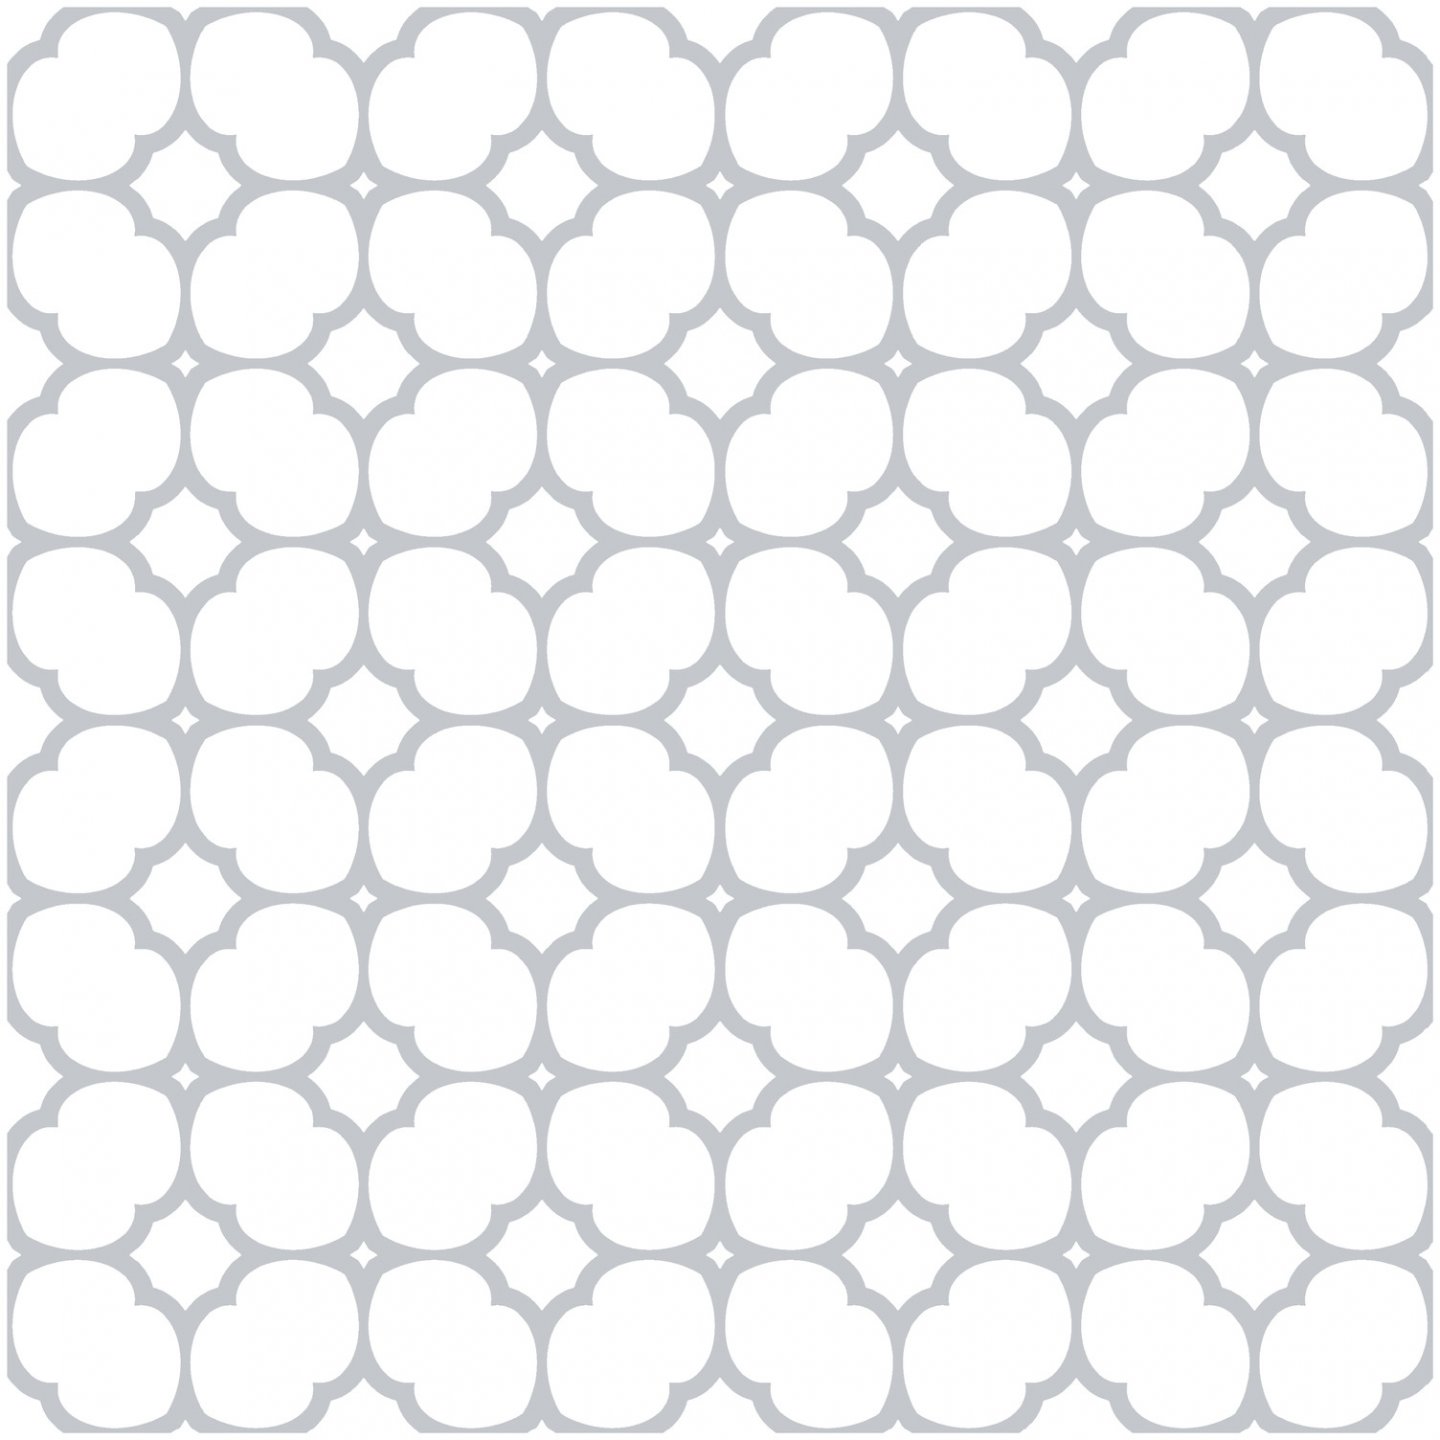 Samolepicí podlahové čtverce PVC dlažba šedá Bloomy Grid (30,5 x 30,5 cm) 2745060 / samolepící vinylové podlahy - PVC dlaždice 274-5060 d-c-fix floor